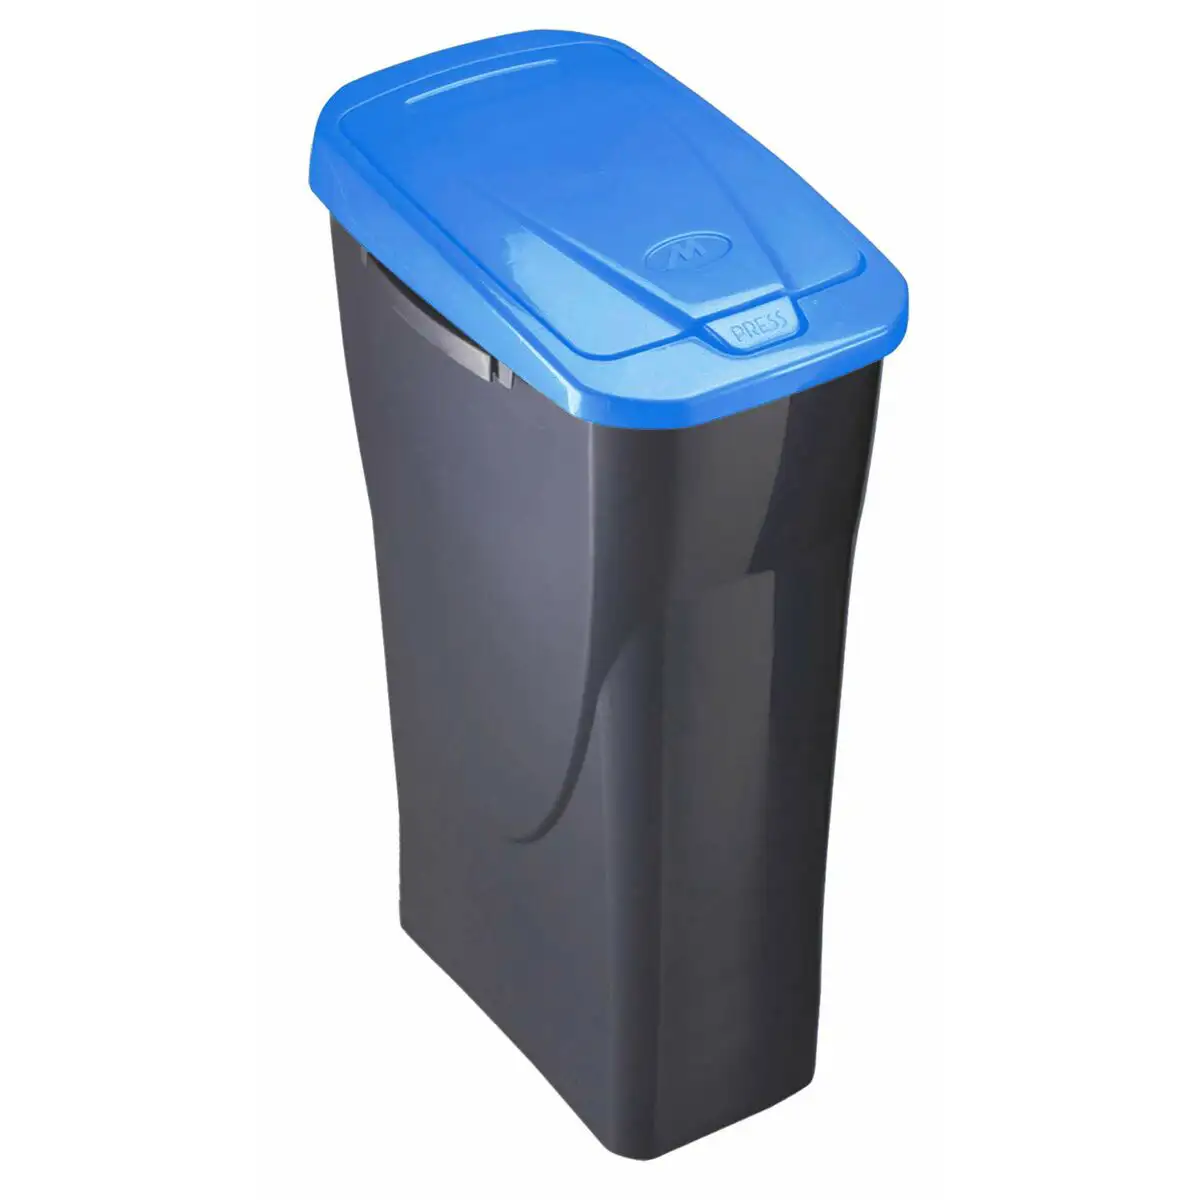 Poubelle recyclage mondex ecobin bleu avec couvercle 25 l_1061. DIAYTAR SENEGAL - Où Choisir Devient un Acte de Découverte. Découvrez notre gamme et choisissez des produits qui éveillent votre curiosité et élargissent vos horizons.